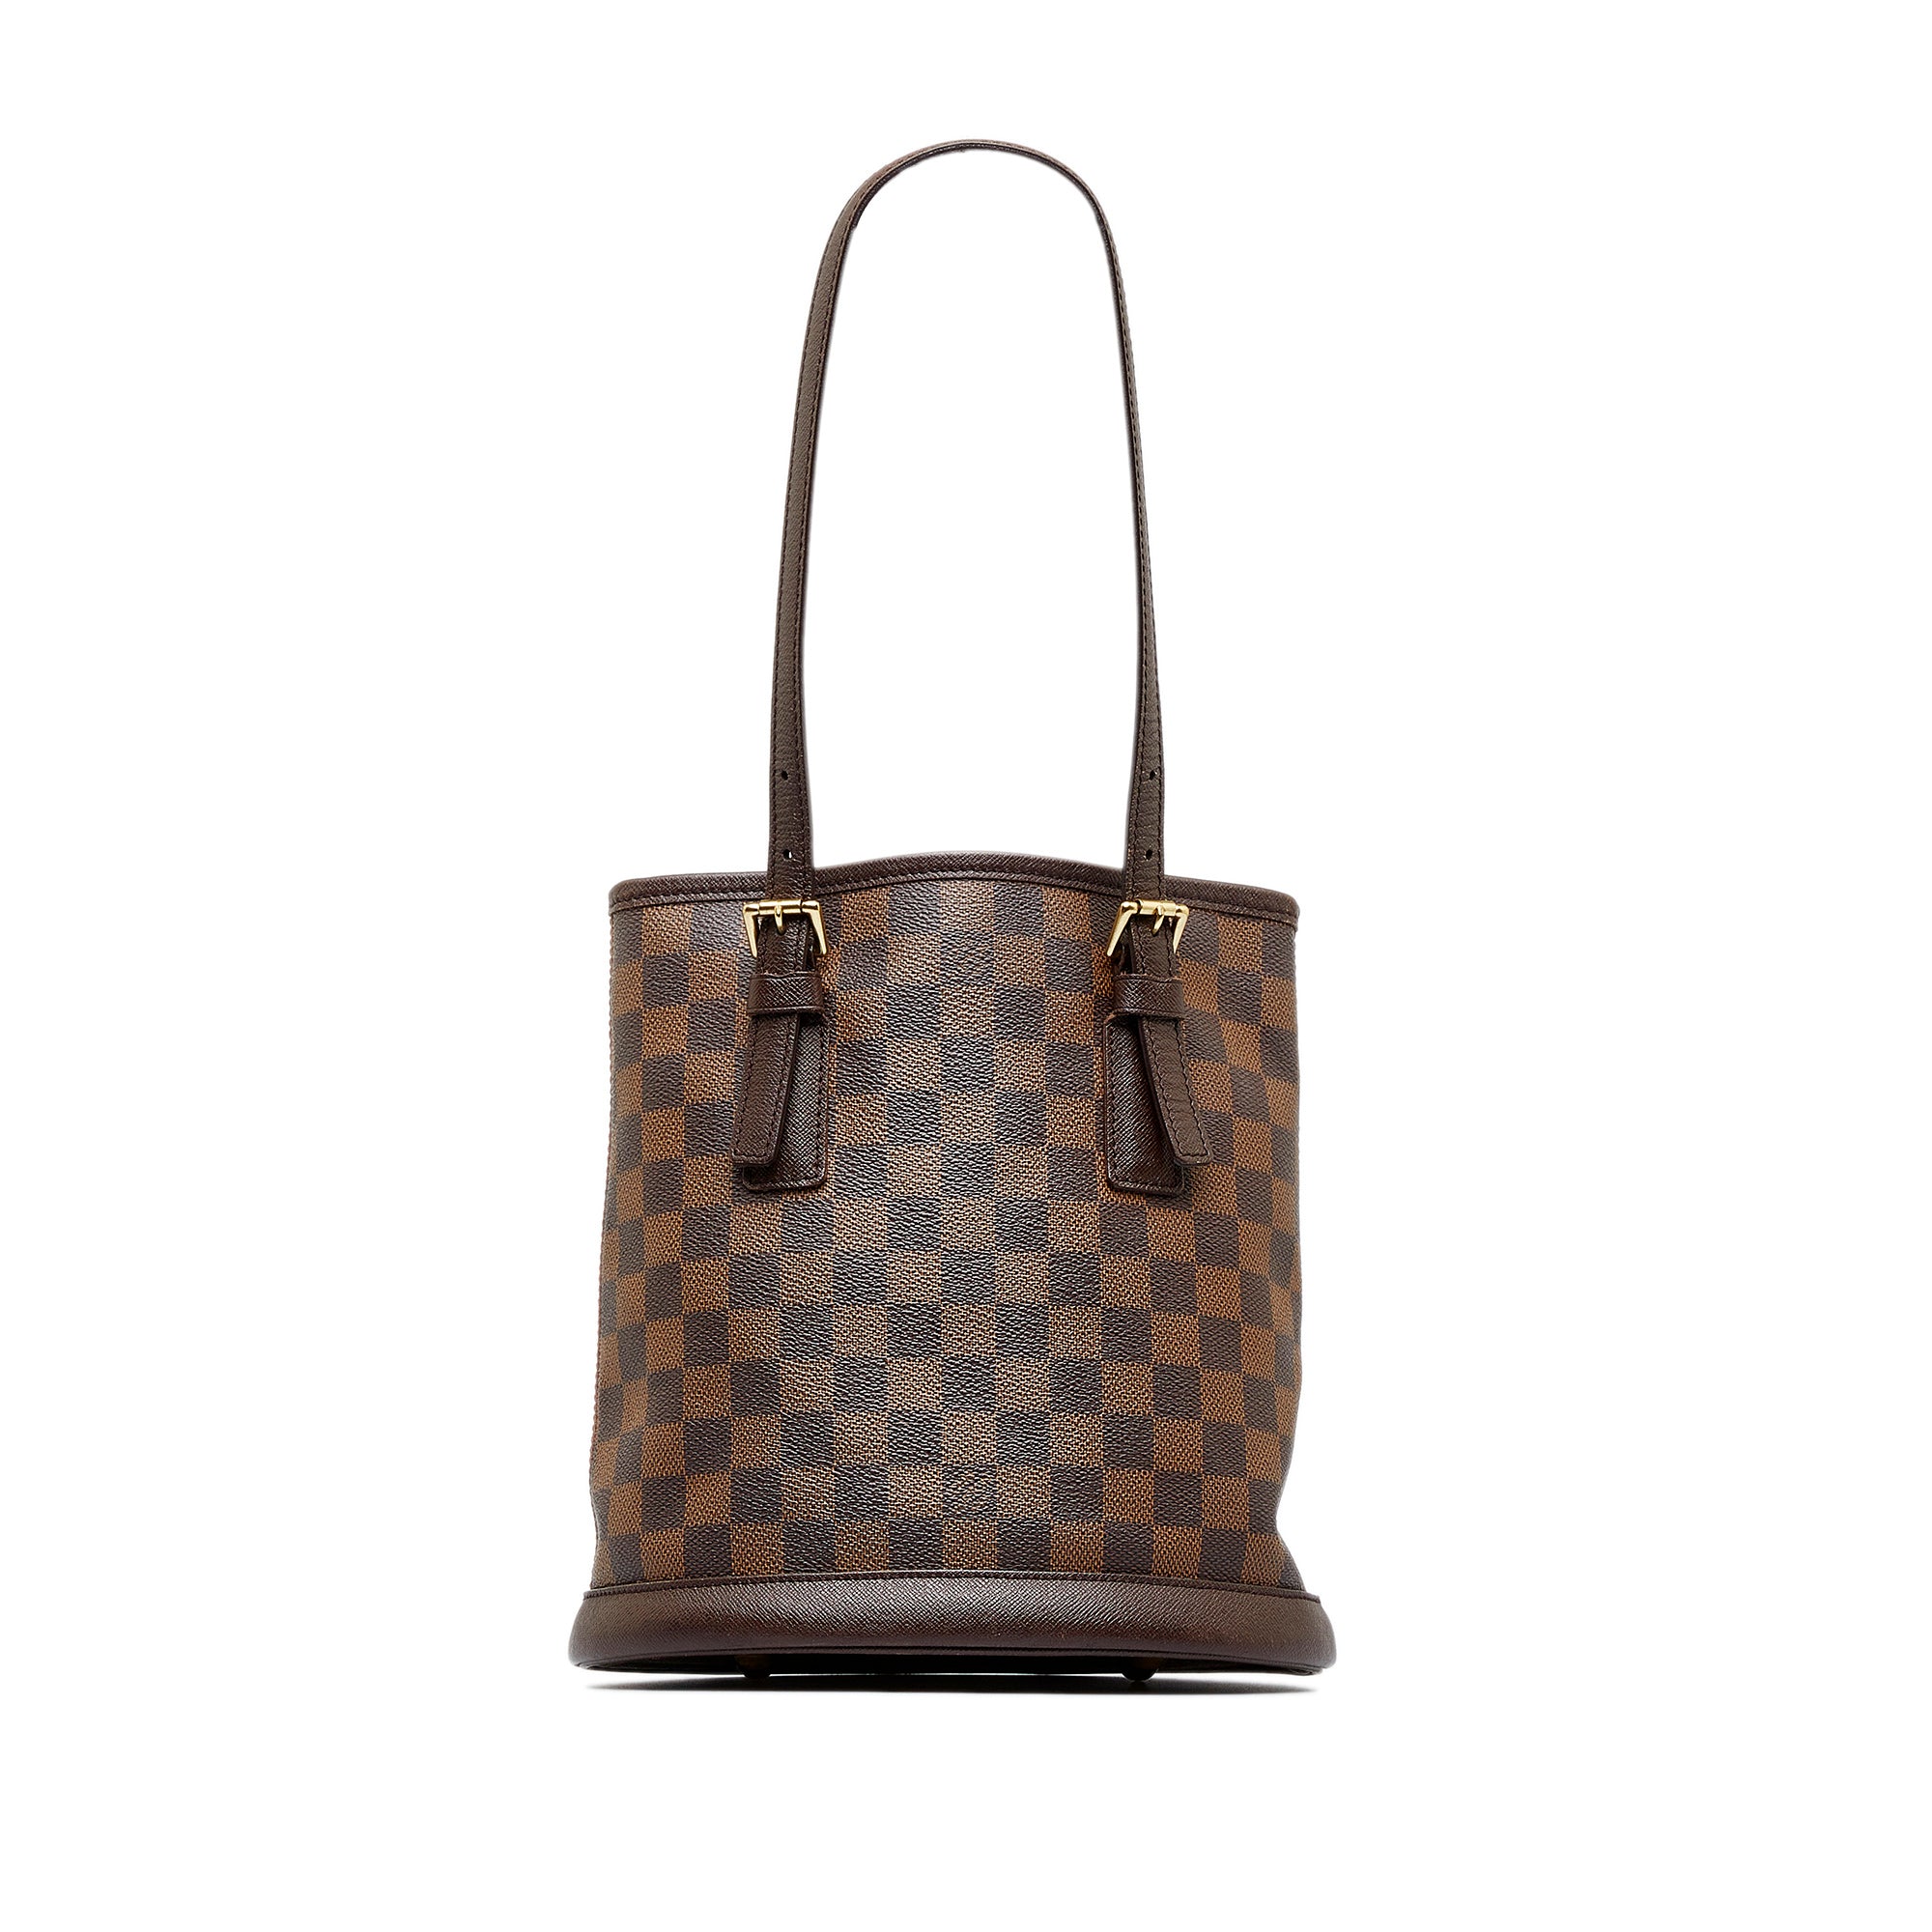 Authentic Louis Vuitton damier ebene bucket pouch